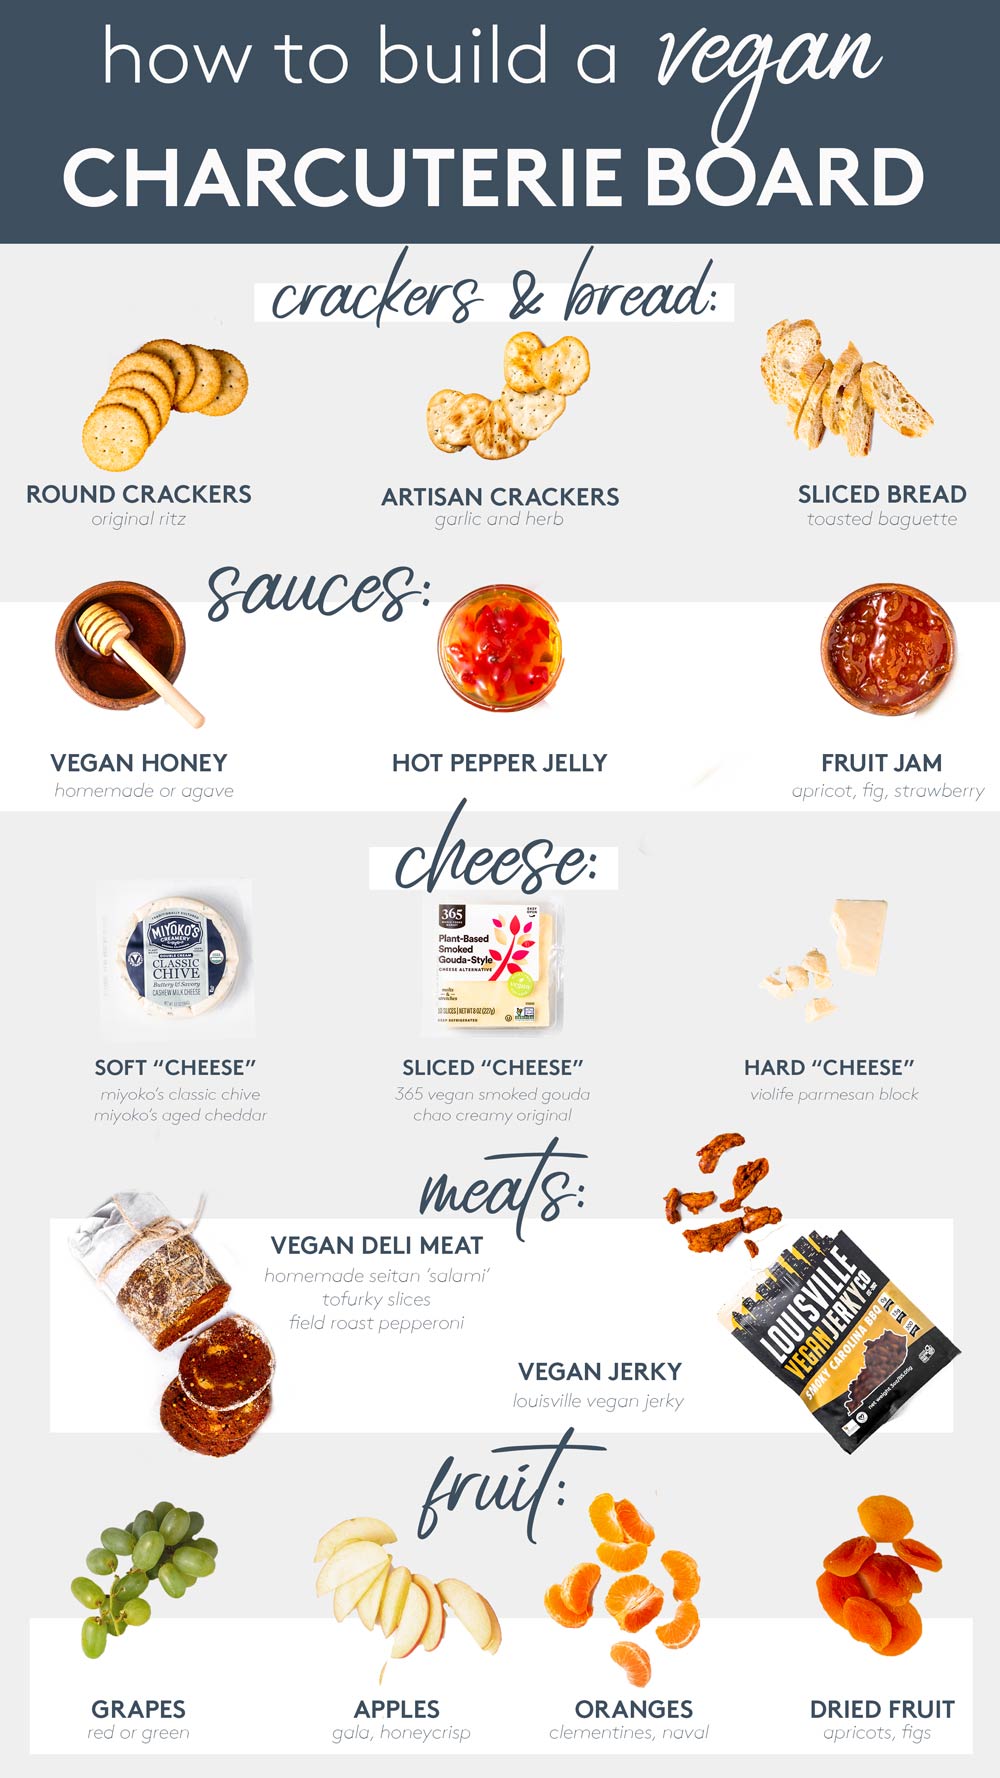 Vegan charcuterie board ingredients